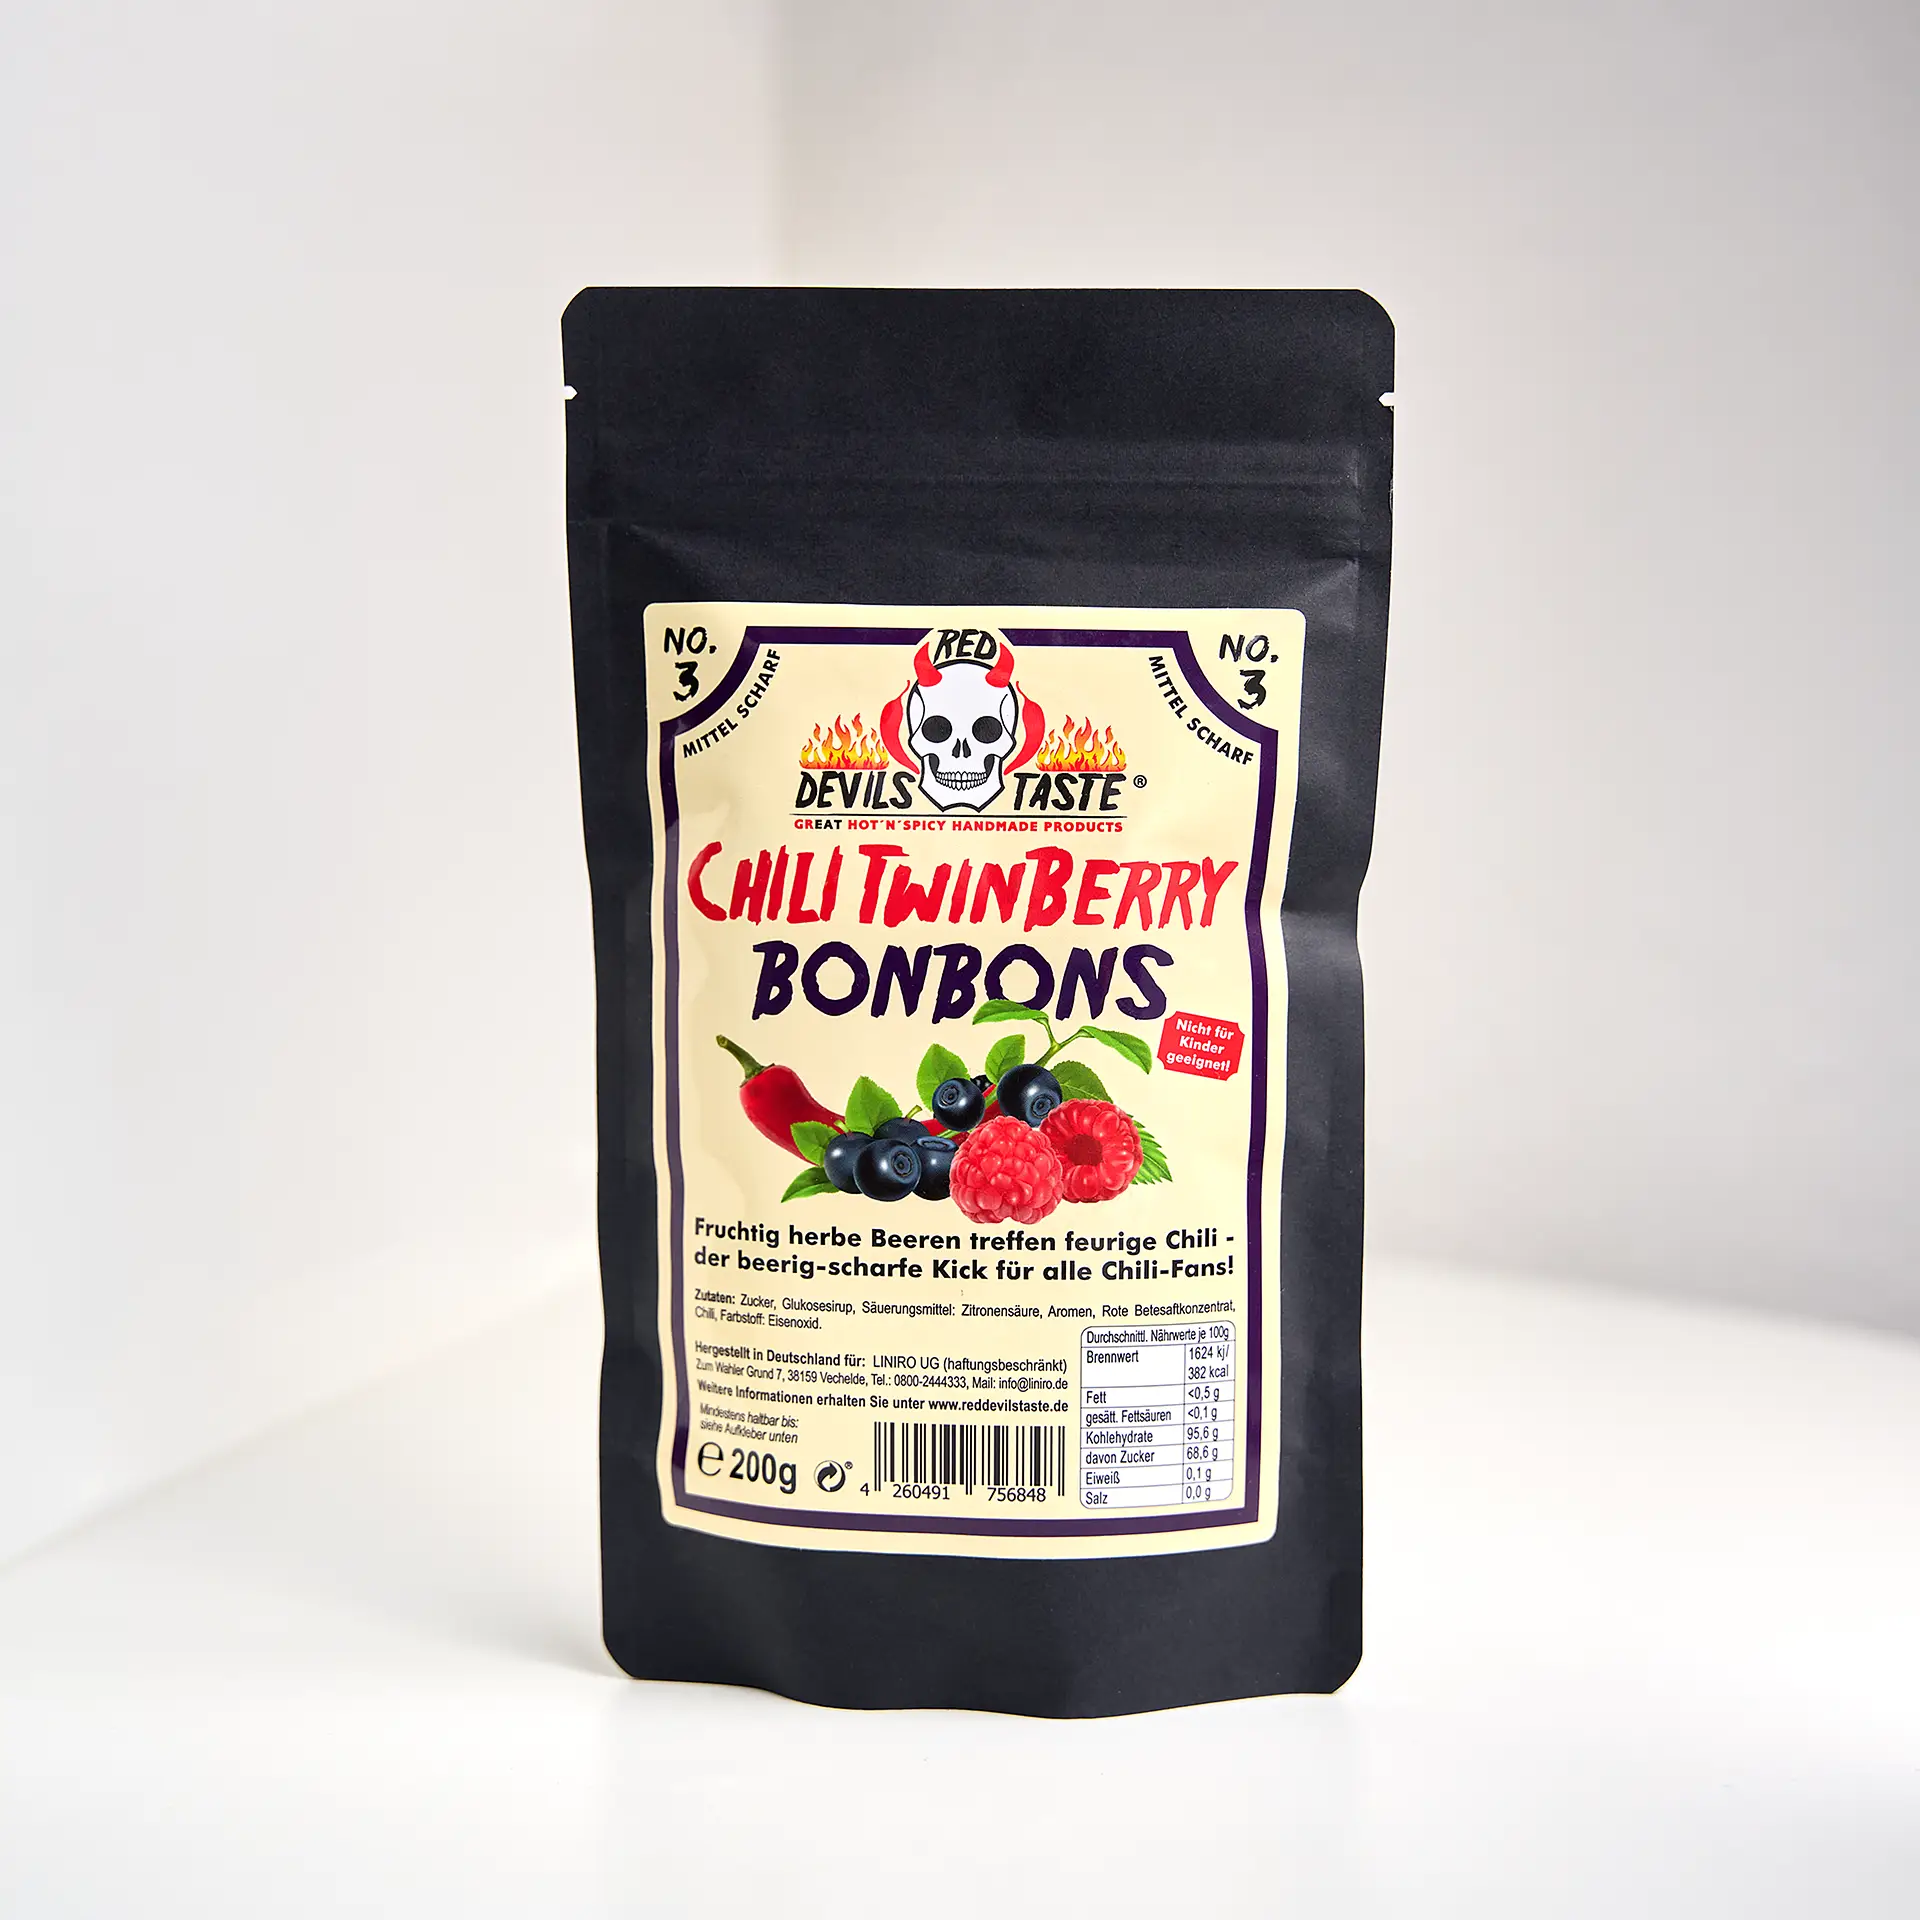 Red Devils Taste - Chili TwinBerry Bonbon - Blaubeere & Himbeere - scharf - 200g - Hotskala: 5